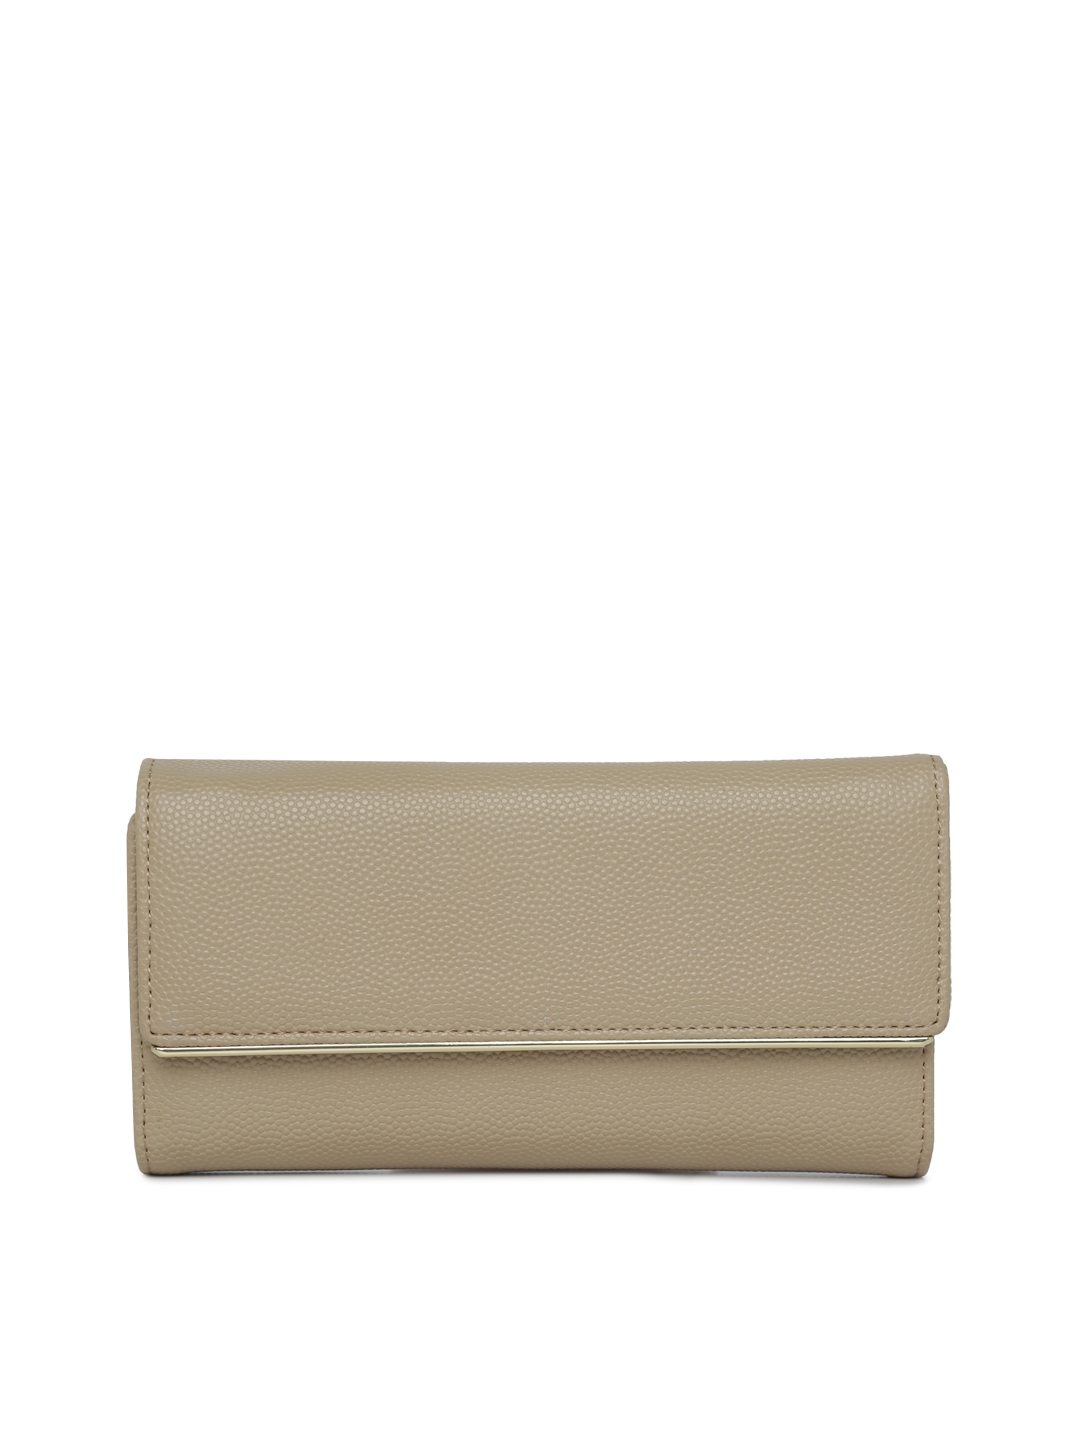 Buy Inc 5 Women Brown Solid Two Fold Wallet - Wallets for Women 8785693 | Myntra